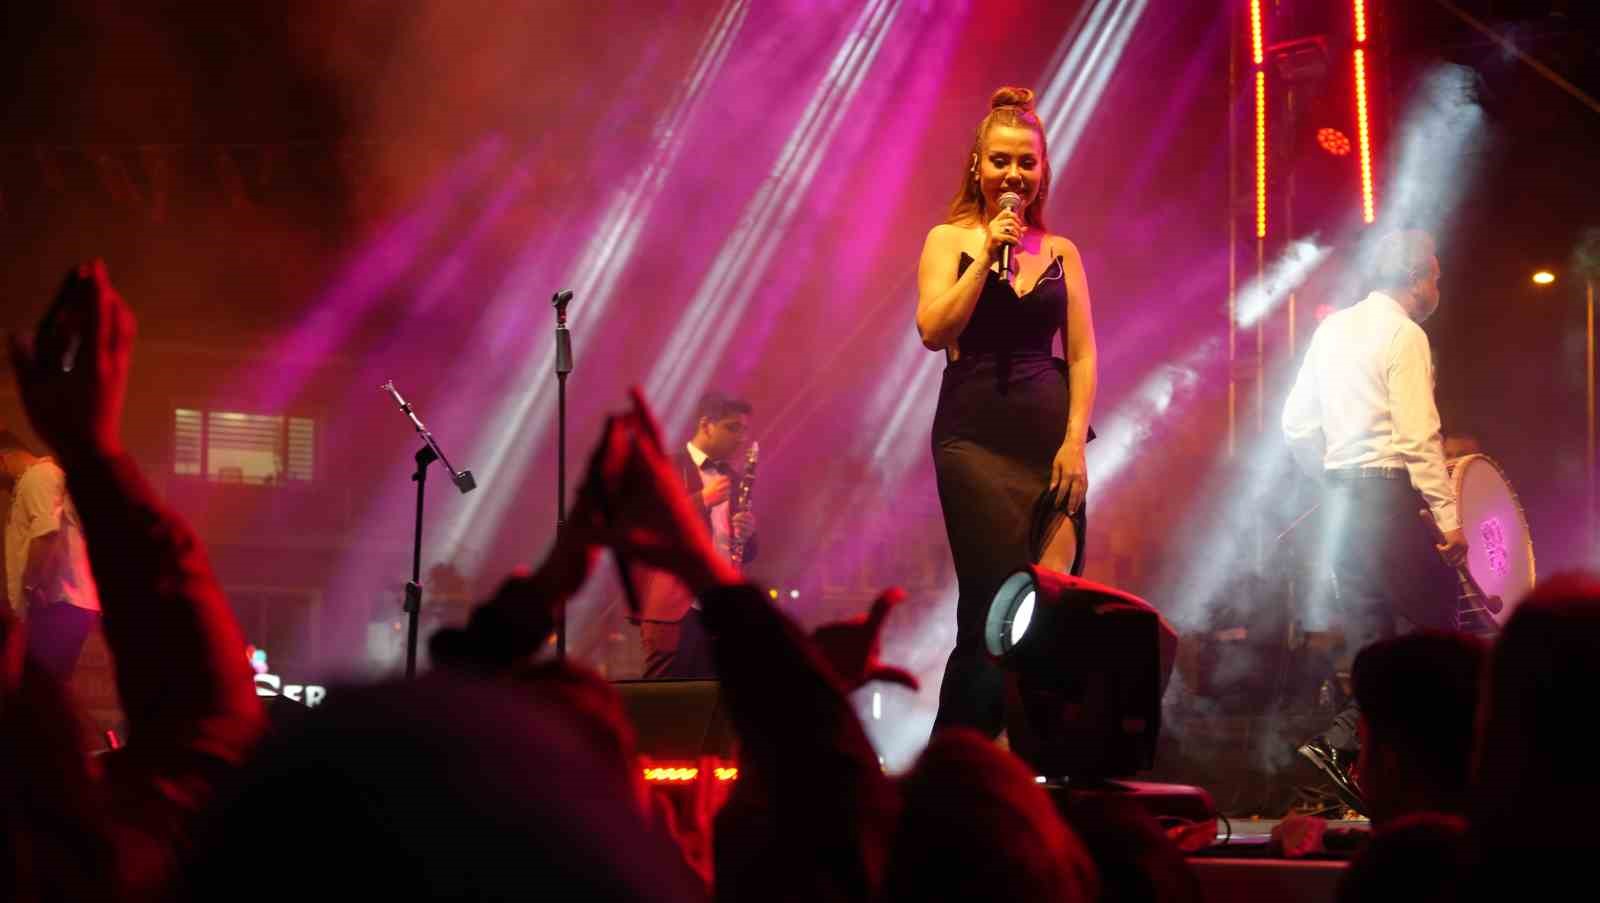 Ünlü şarkıcı Lara konser verdi, izdiham yaşandı: Binlerce vatandaş meydana sığmadı İhlas Haber Ajansı